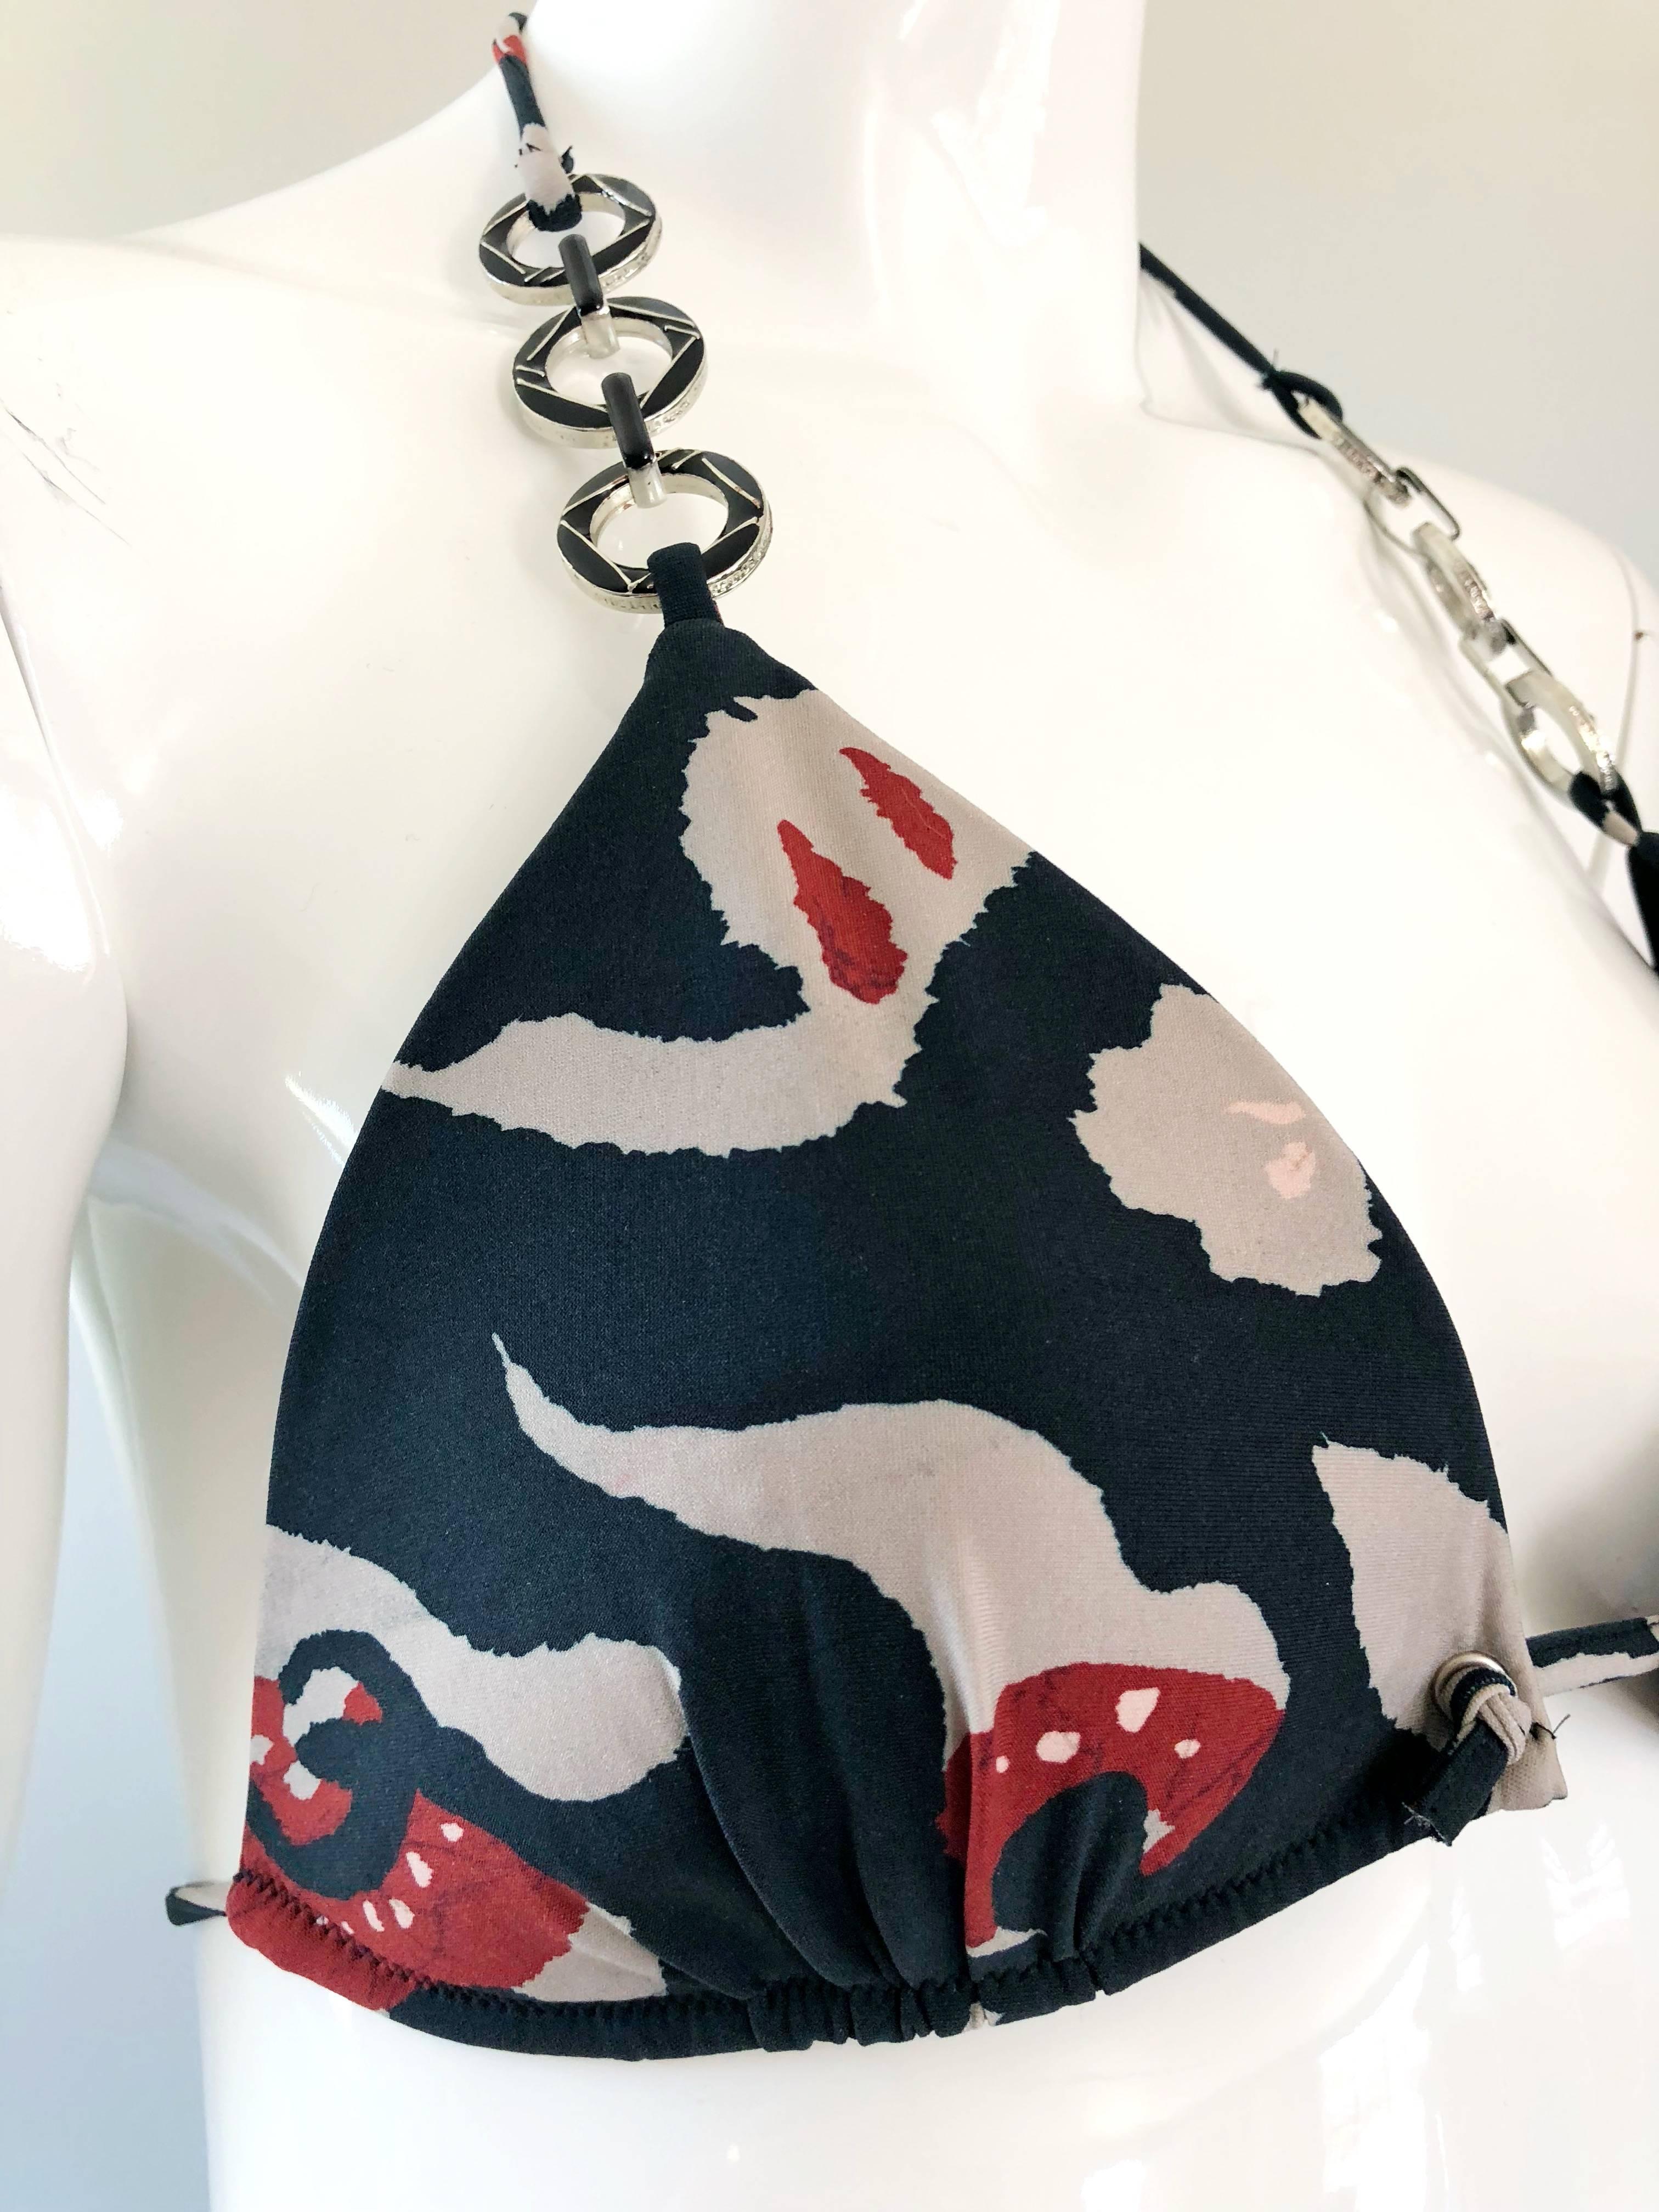 Oscar de la Renta Bikini-Badeanzug mit Batikmuster und Kettengliedern, neu mit Preisschildern, Größe Large 6